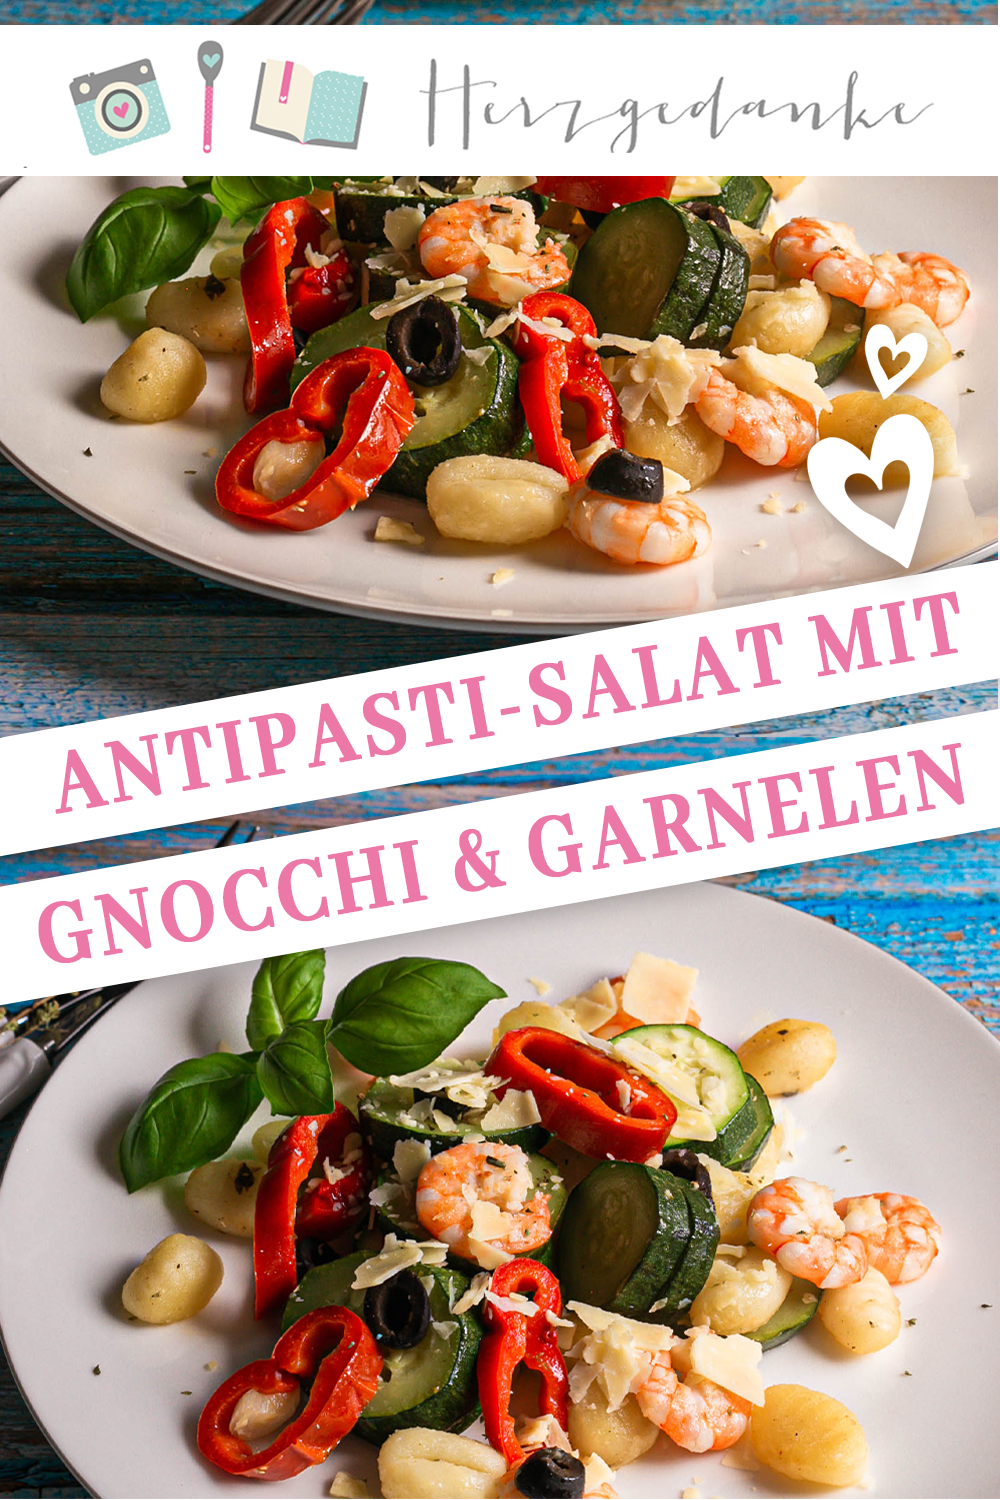 Antipasti-Salat mit Gnocchi und Garnelen